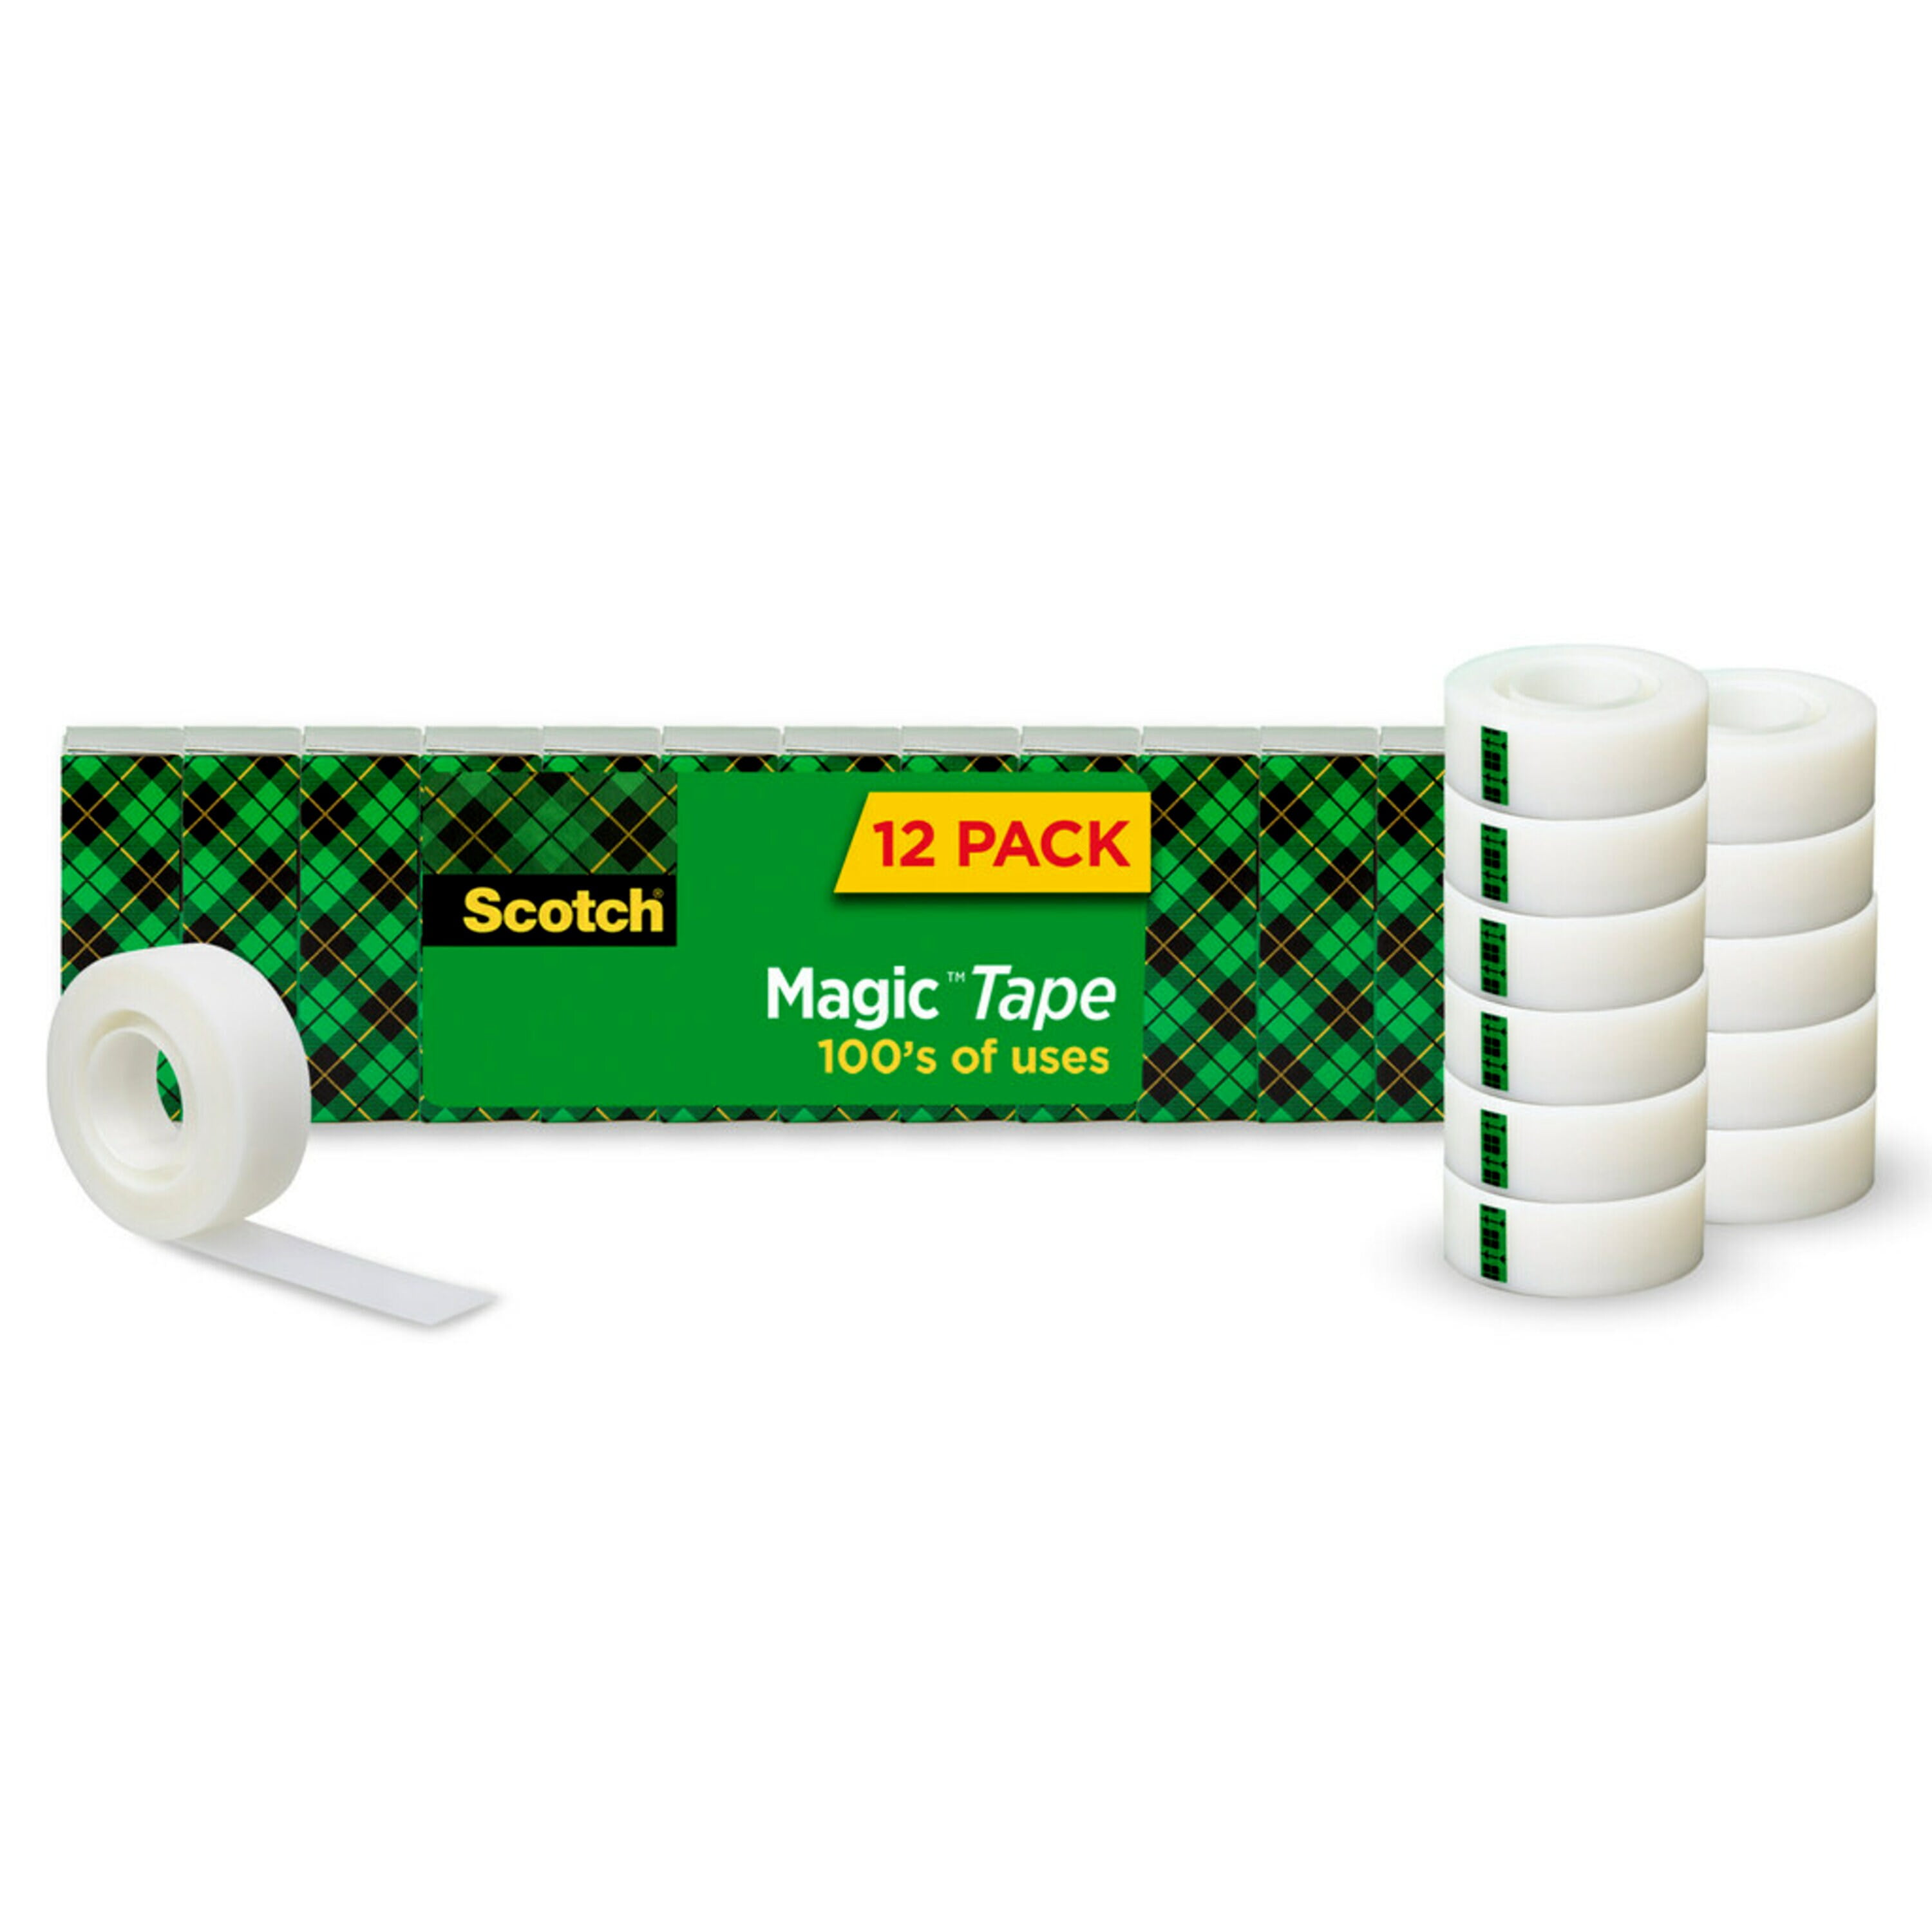 3M Scotch Magic Tape Refill